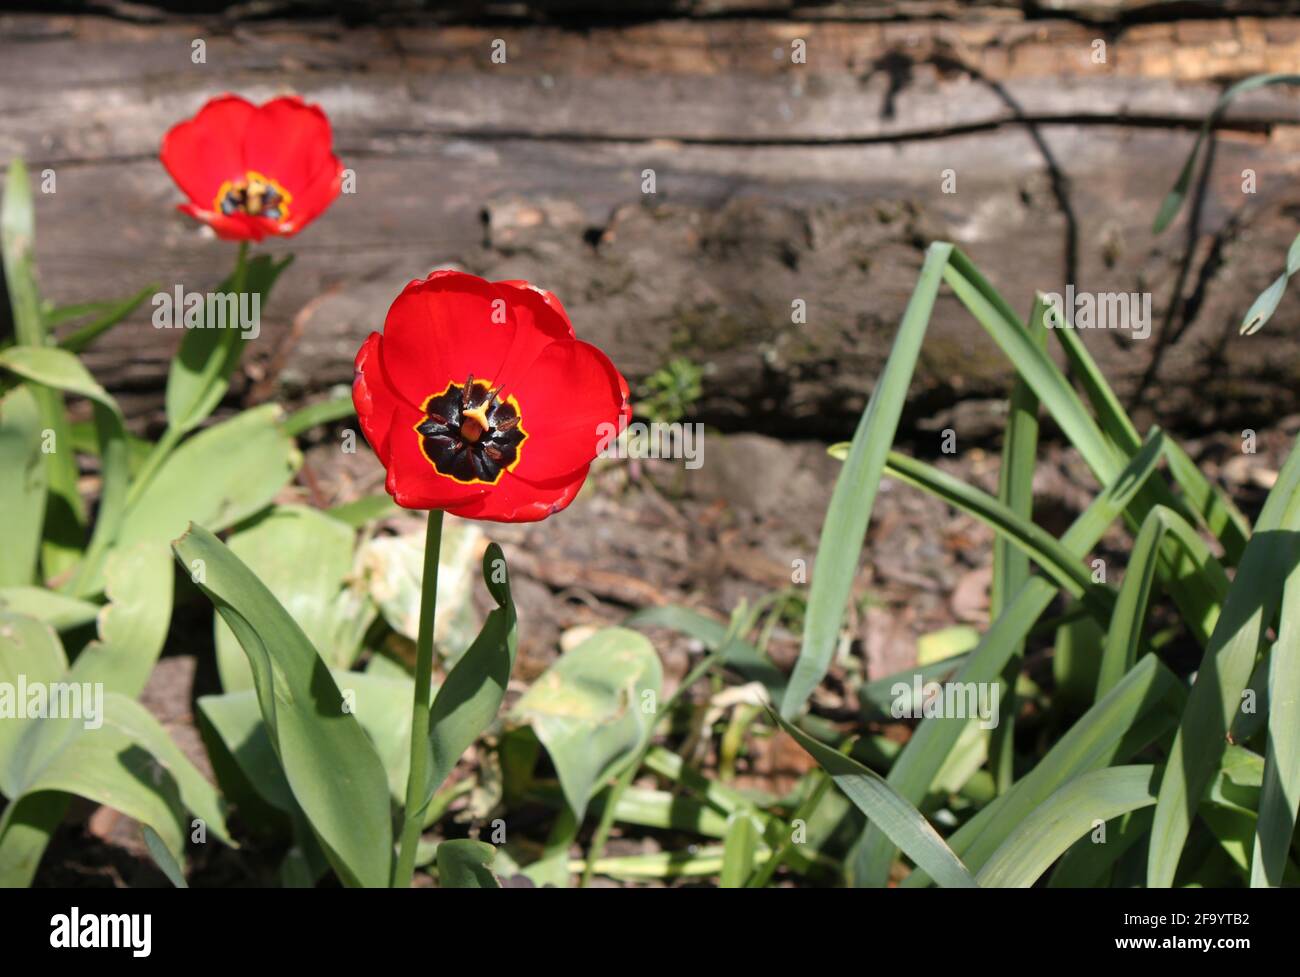 Amapolas rojas vibrantes que crecen en un jardín de flores silvestres. Las amapolas del jardín se encuentran en el jardín público tripulado por voluntarios de la comunidad. Foto de stock